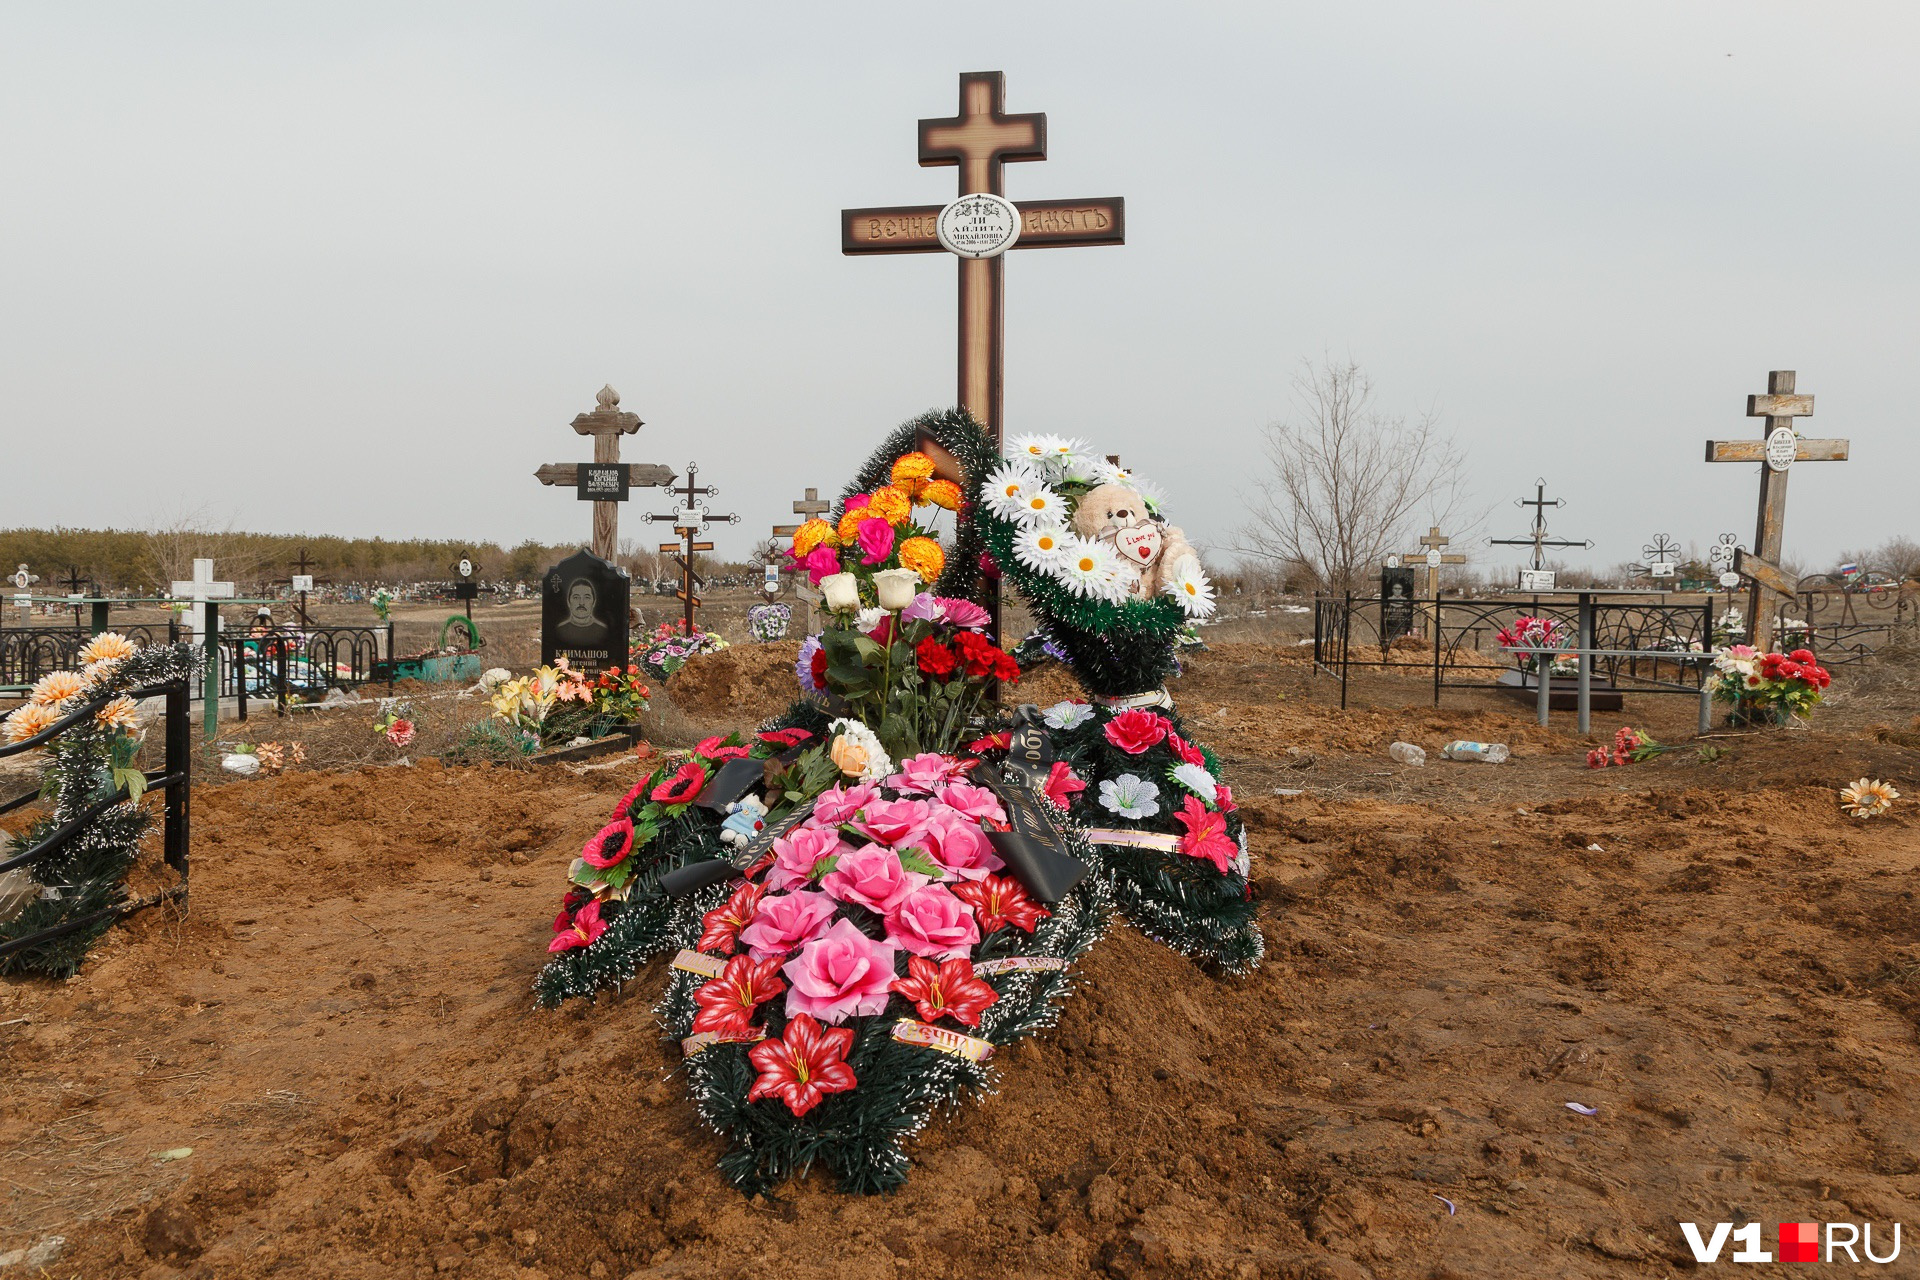 Похоронили школьницу на окраине кладбища в Камышине